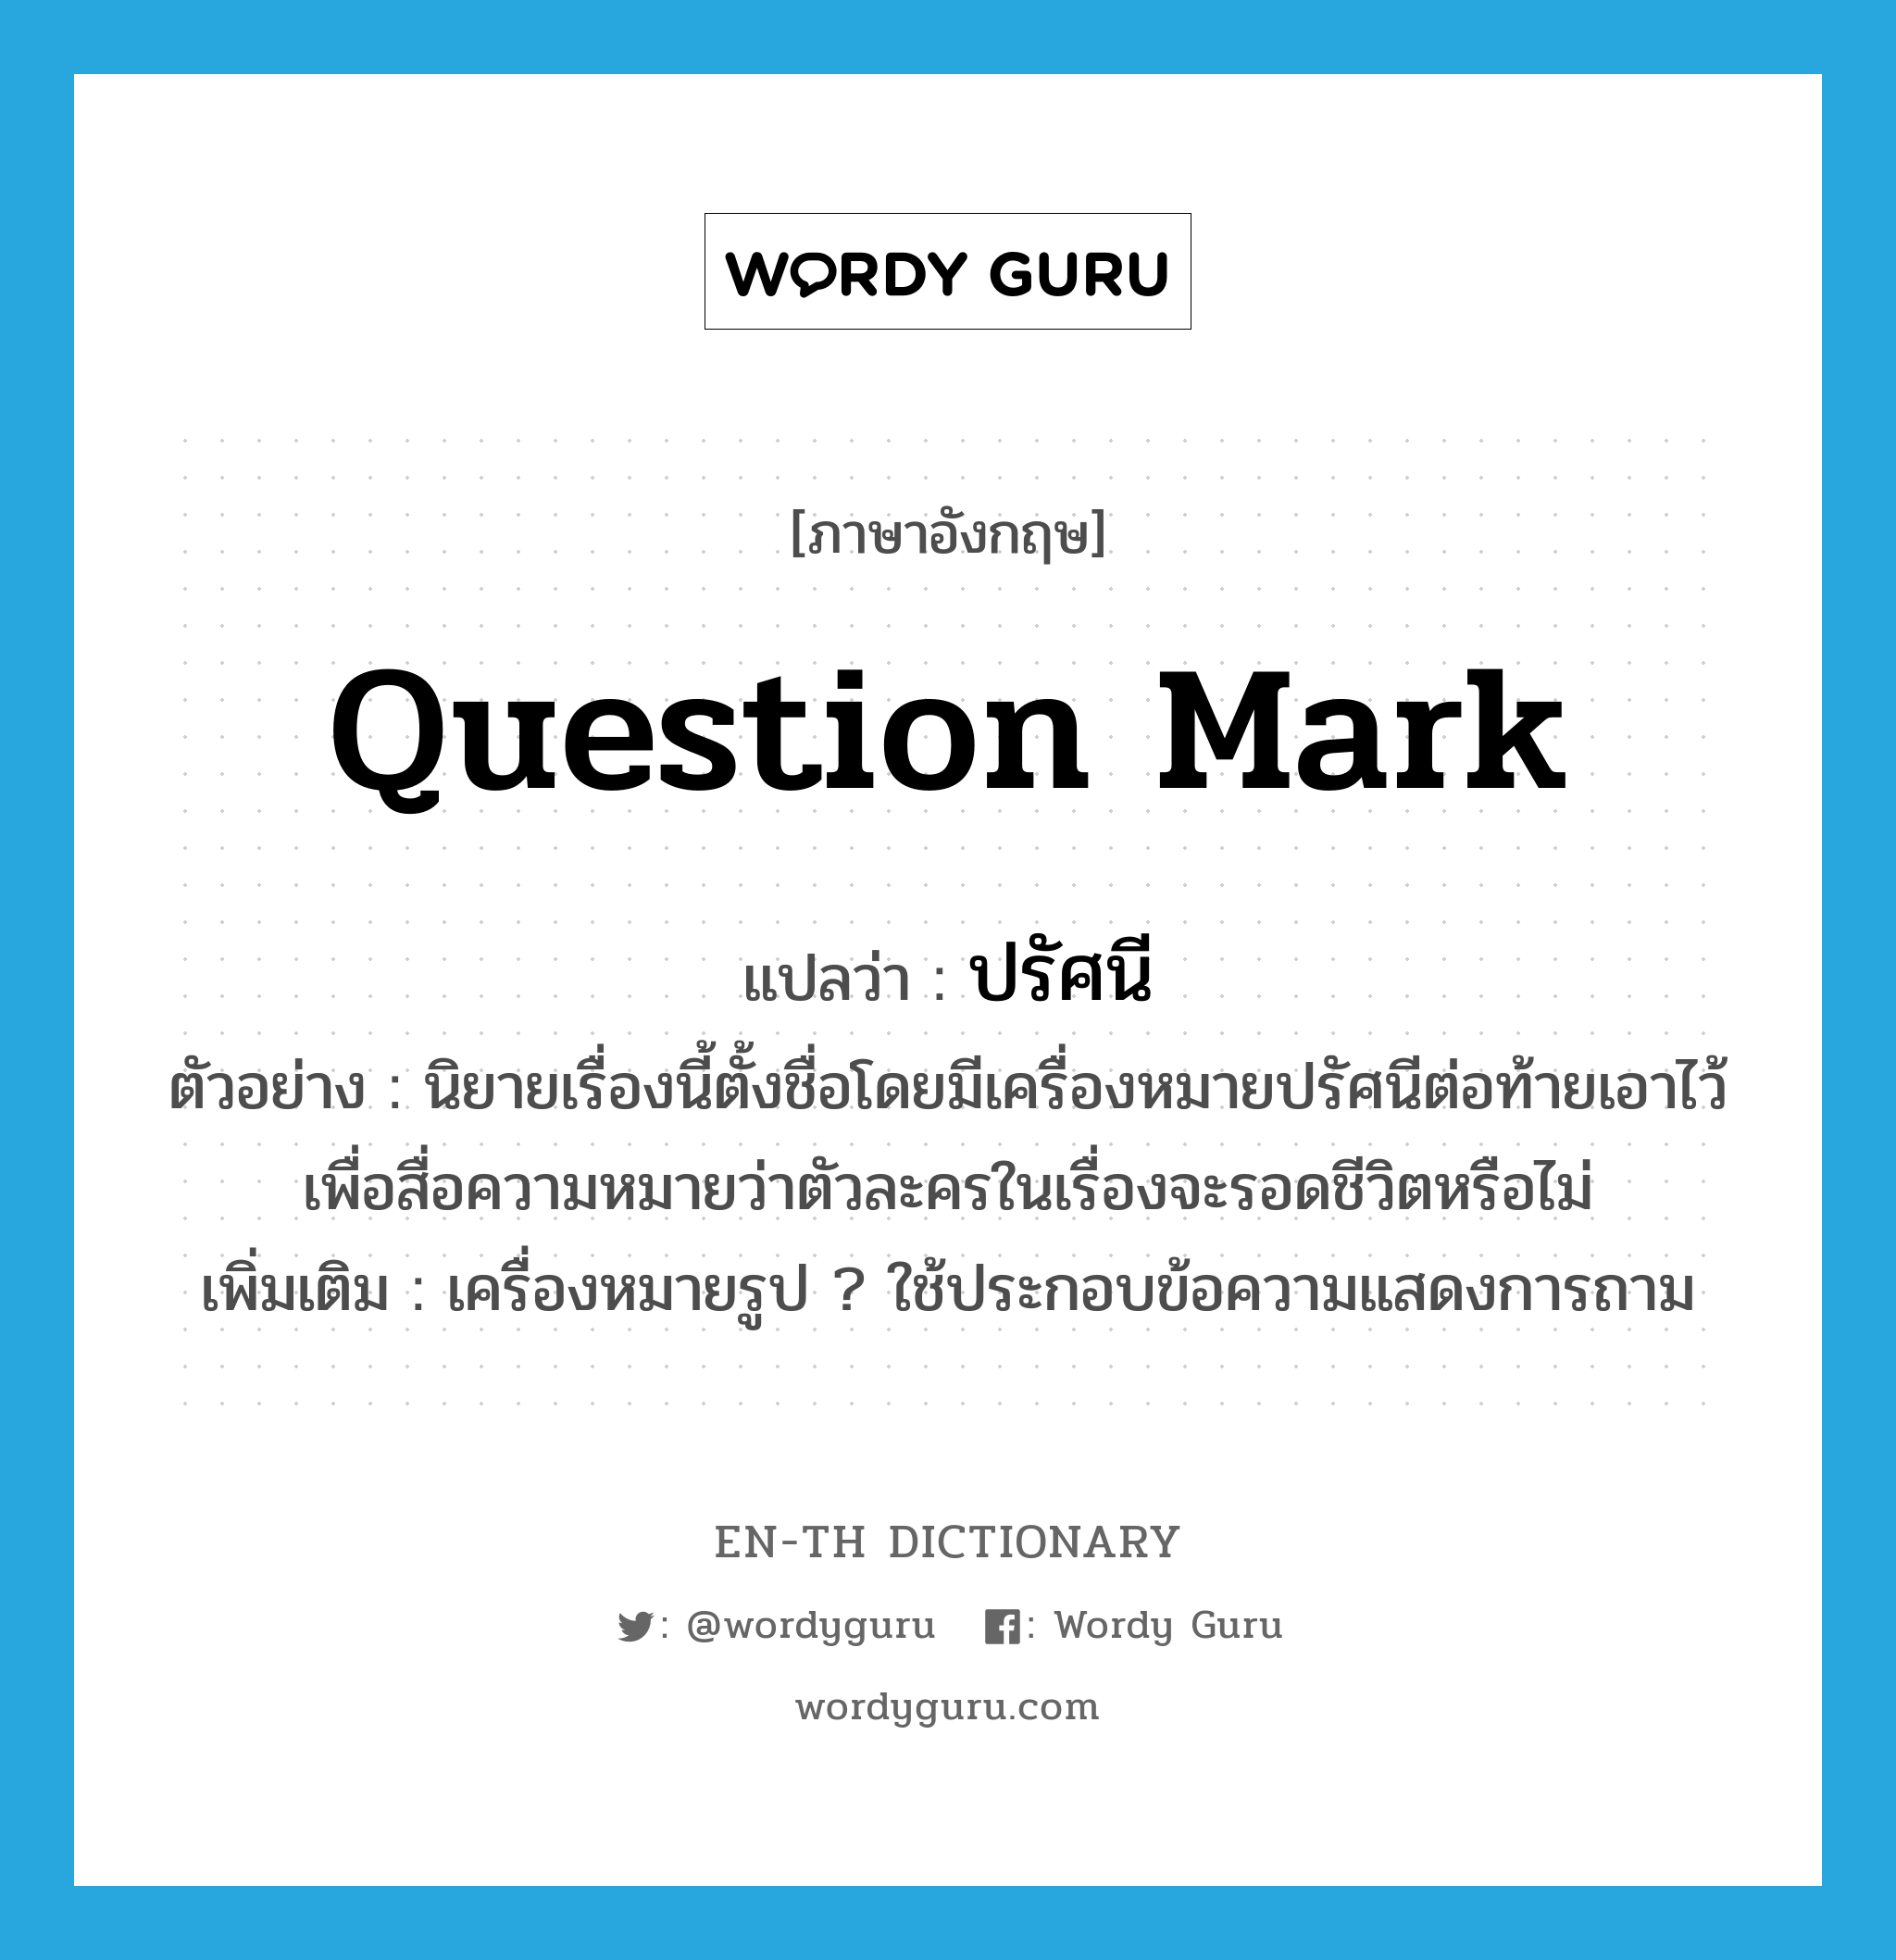 question mark แปลว่า?, คำศัพท์ภาษาอังกฤษ question mark แปลว่า ปรัศนี ประเภท N ตัวอย่าง นิยายเรื่องนี้ตั้งชื่อโดยมีเครื่องหมายปรัศนีต่อท้ายเอาไว้เพื่อสื่อความหมายว่าตัวละครในเรื่องจะรอดชีวิตหรือไม่ เพิ่มเติม เครื่องหมายรูป ? ใช้ประกอบข้อความแสดงการถาม หมวด N